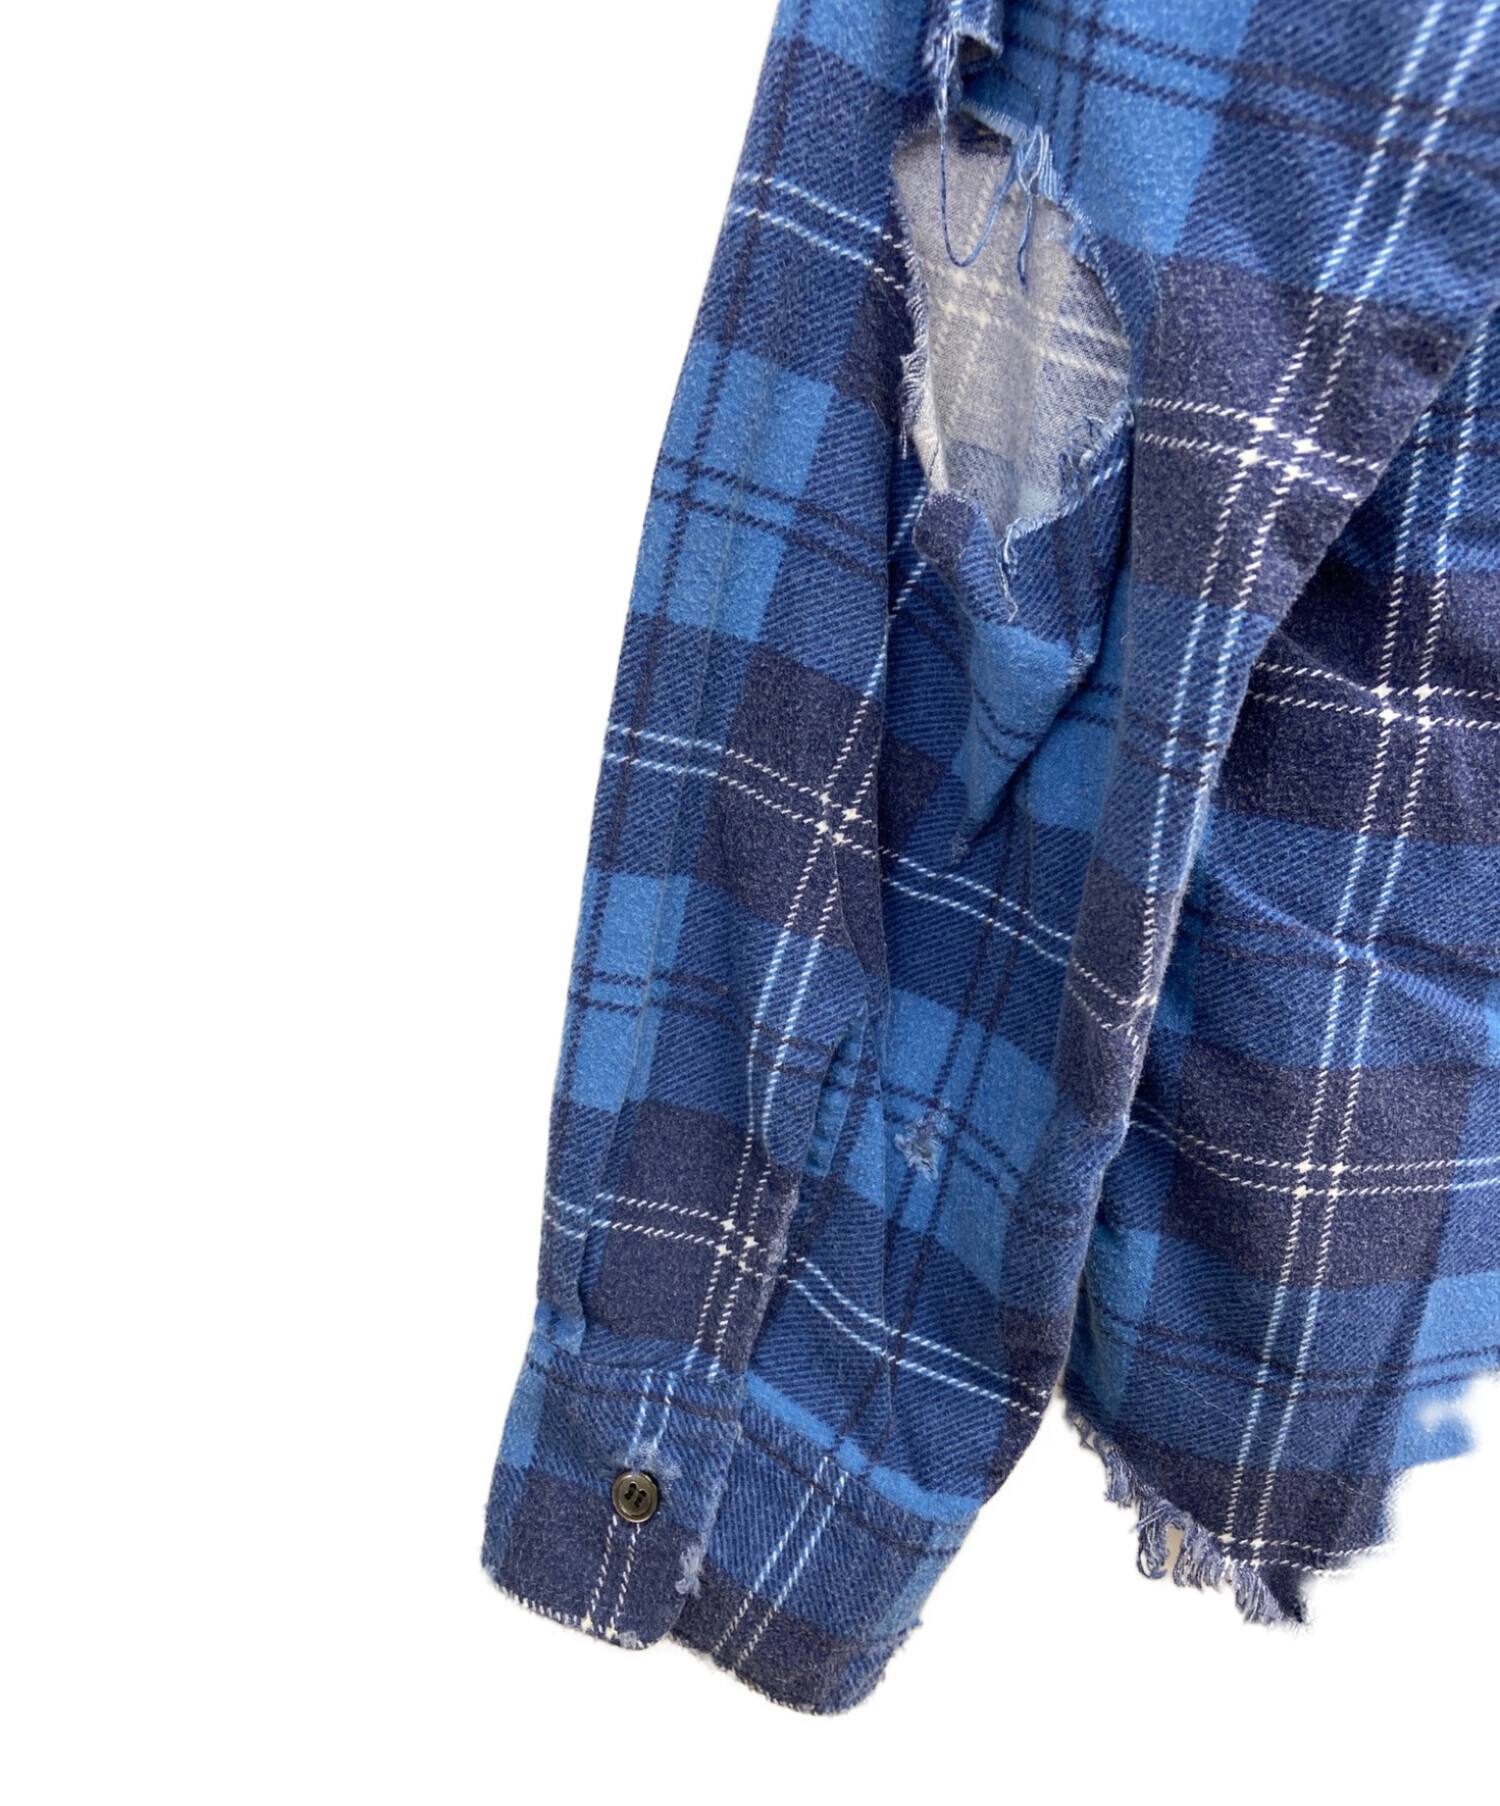 UNUSED (アンユーズド) ダメージチェックネルシャツ ブルー サイズ:S